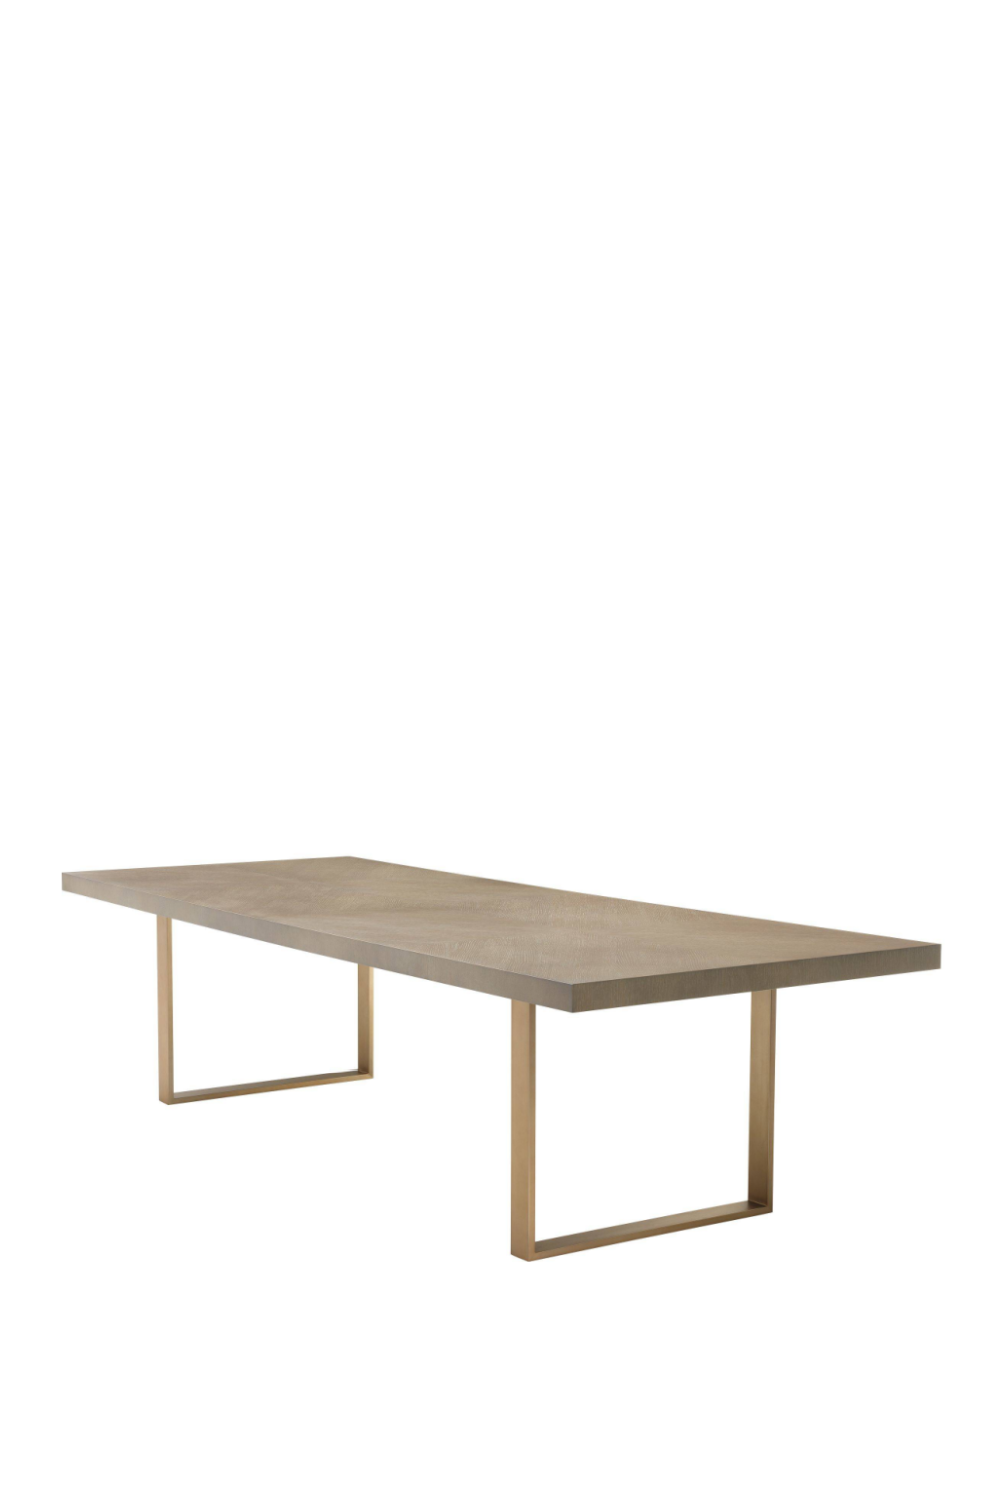 Rectangular Oak Dining Table 120" | Eichholtz Remington | OROA